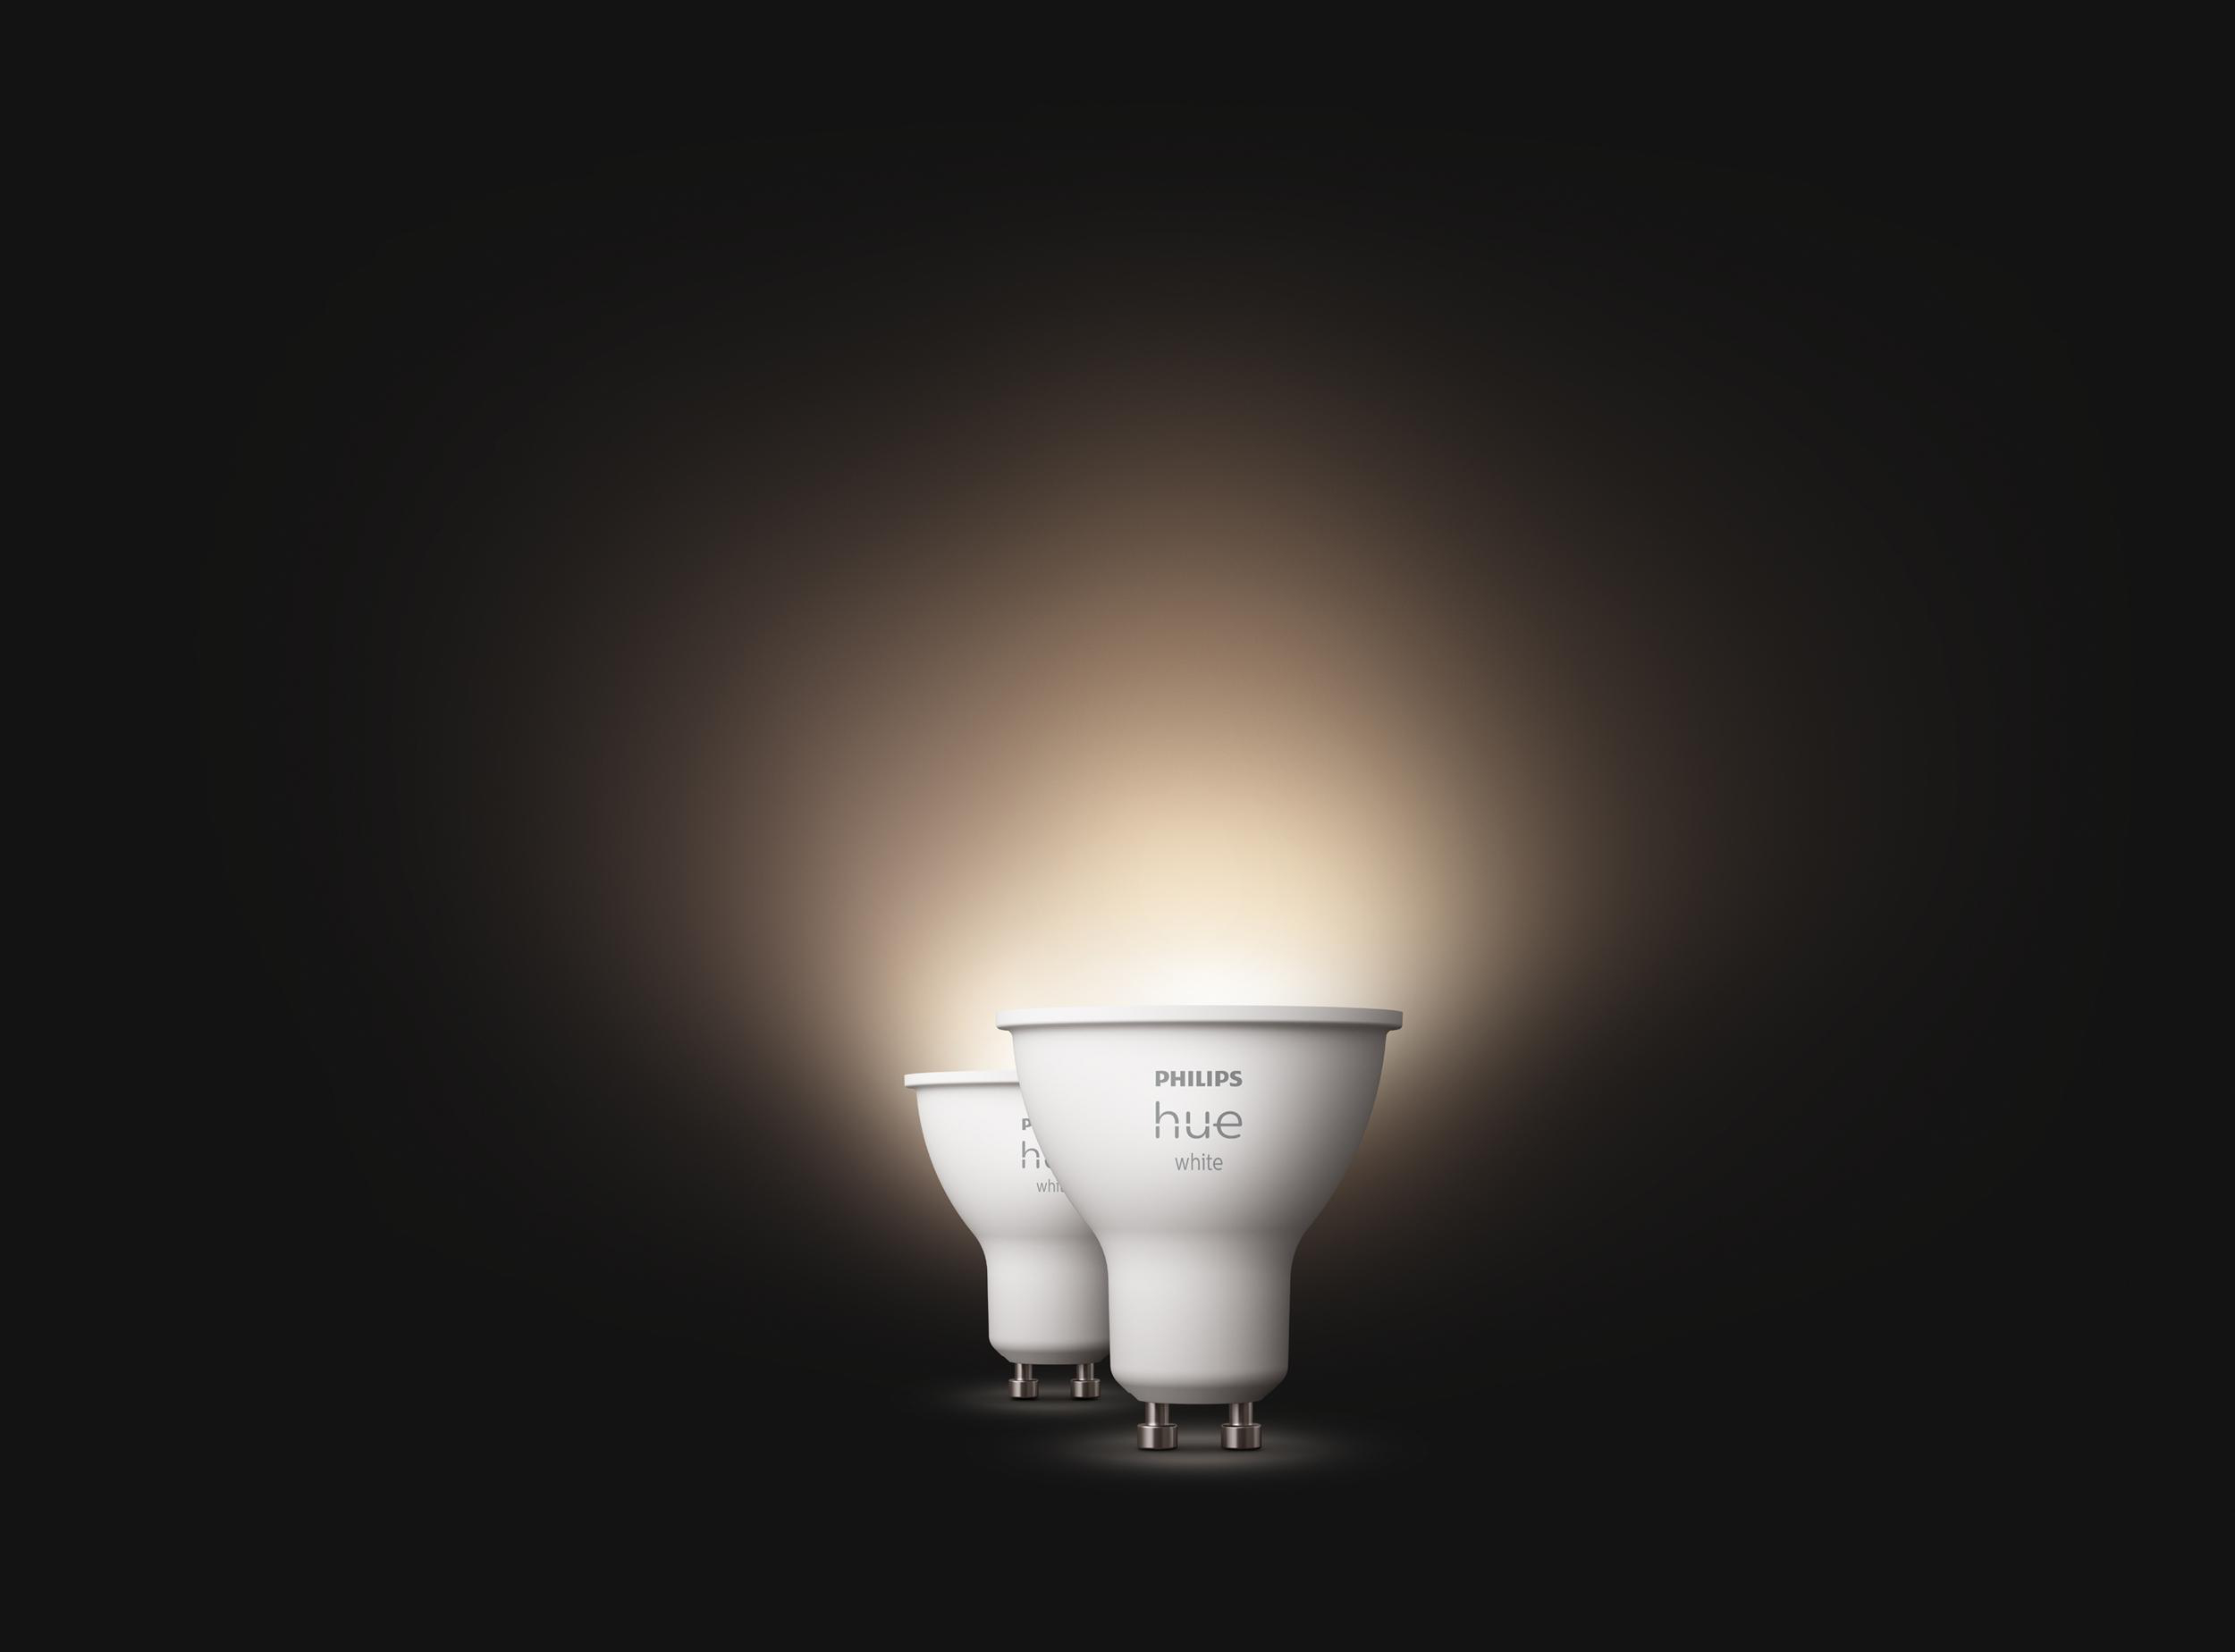 White PHILIPS GU10 LED Warmweiß Doppelpack Hue Lampe